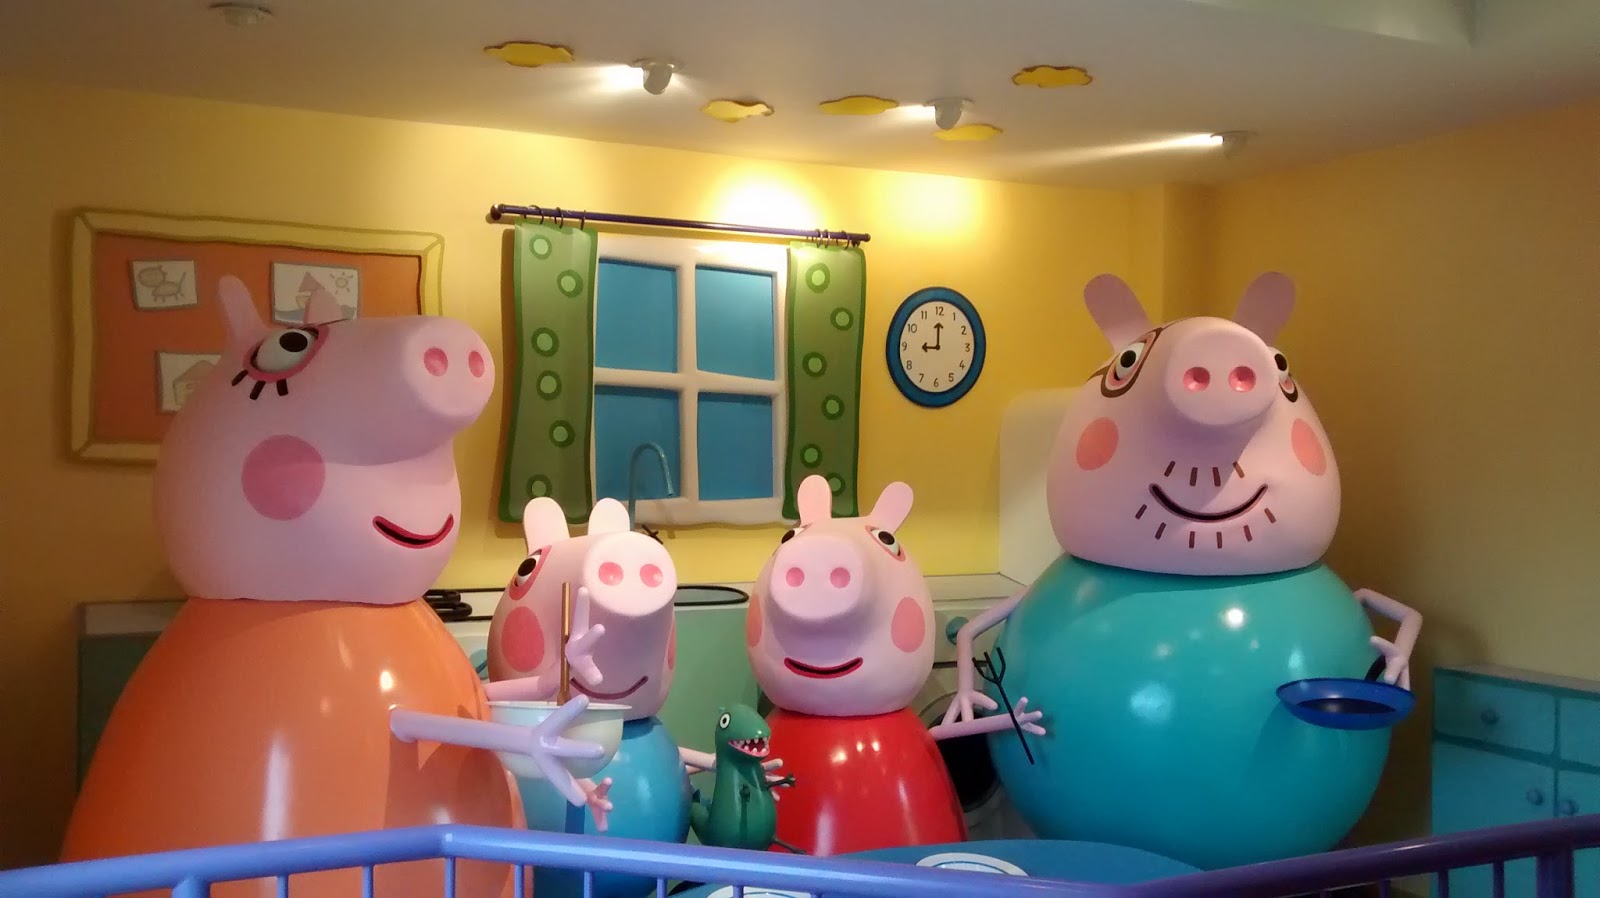 Peppa Pig faz Discovery Kids ser o canal mais visto da tv paga em